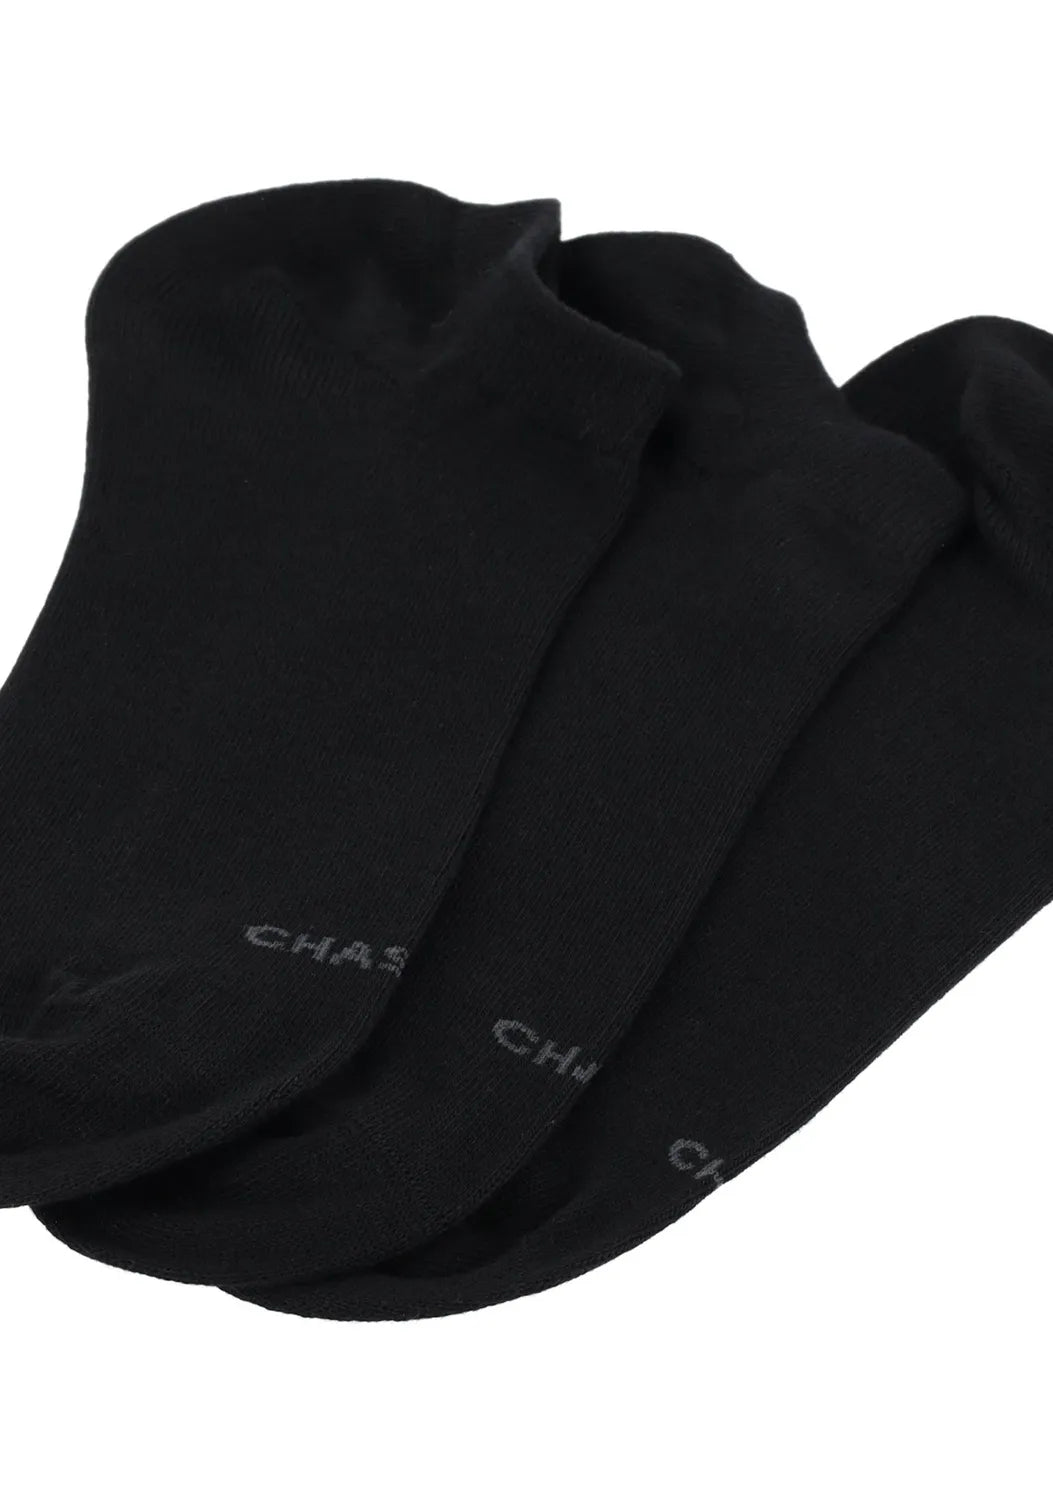 CHASIN | Ankle Socken 3er Pack | E10 WHITE | E90 BLACK